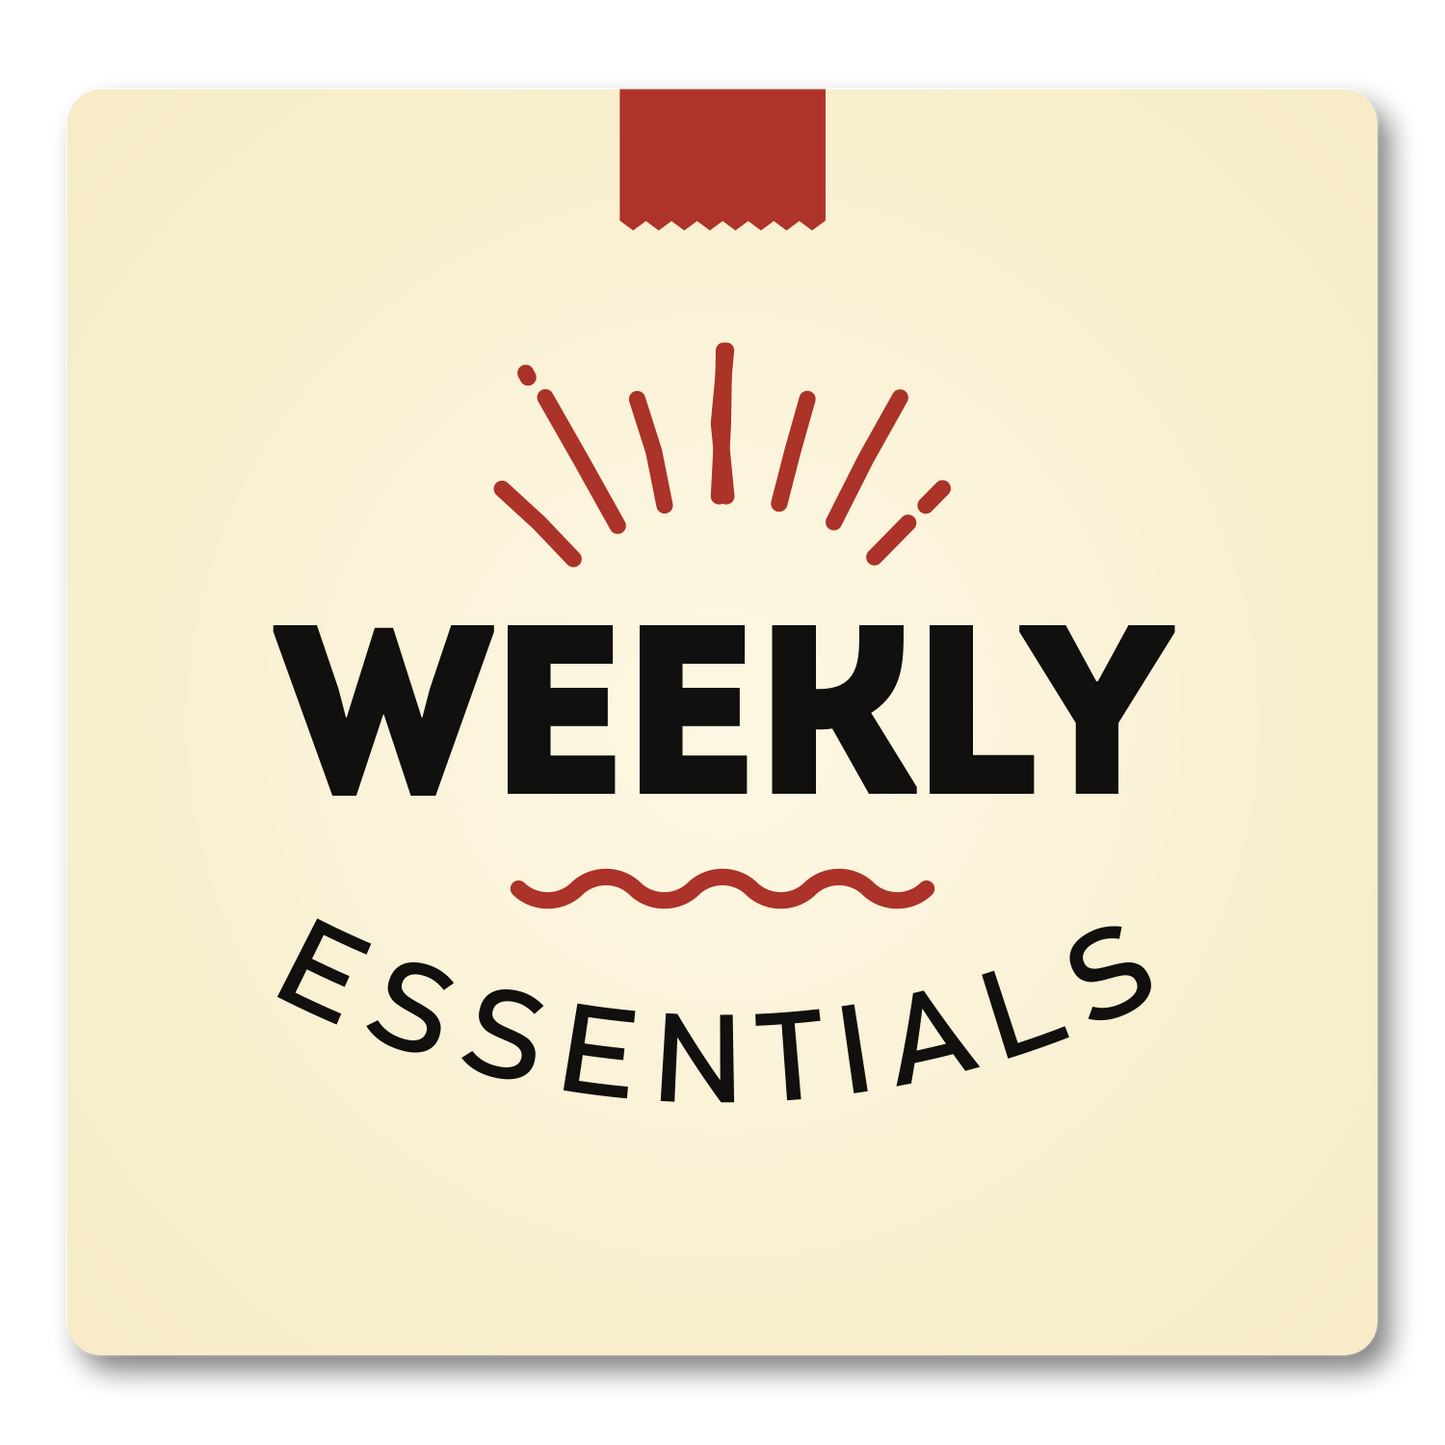 Weekly Essentials